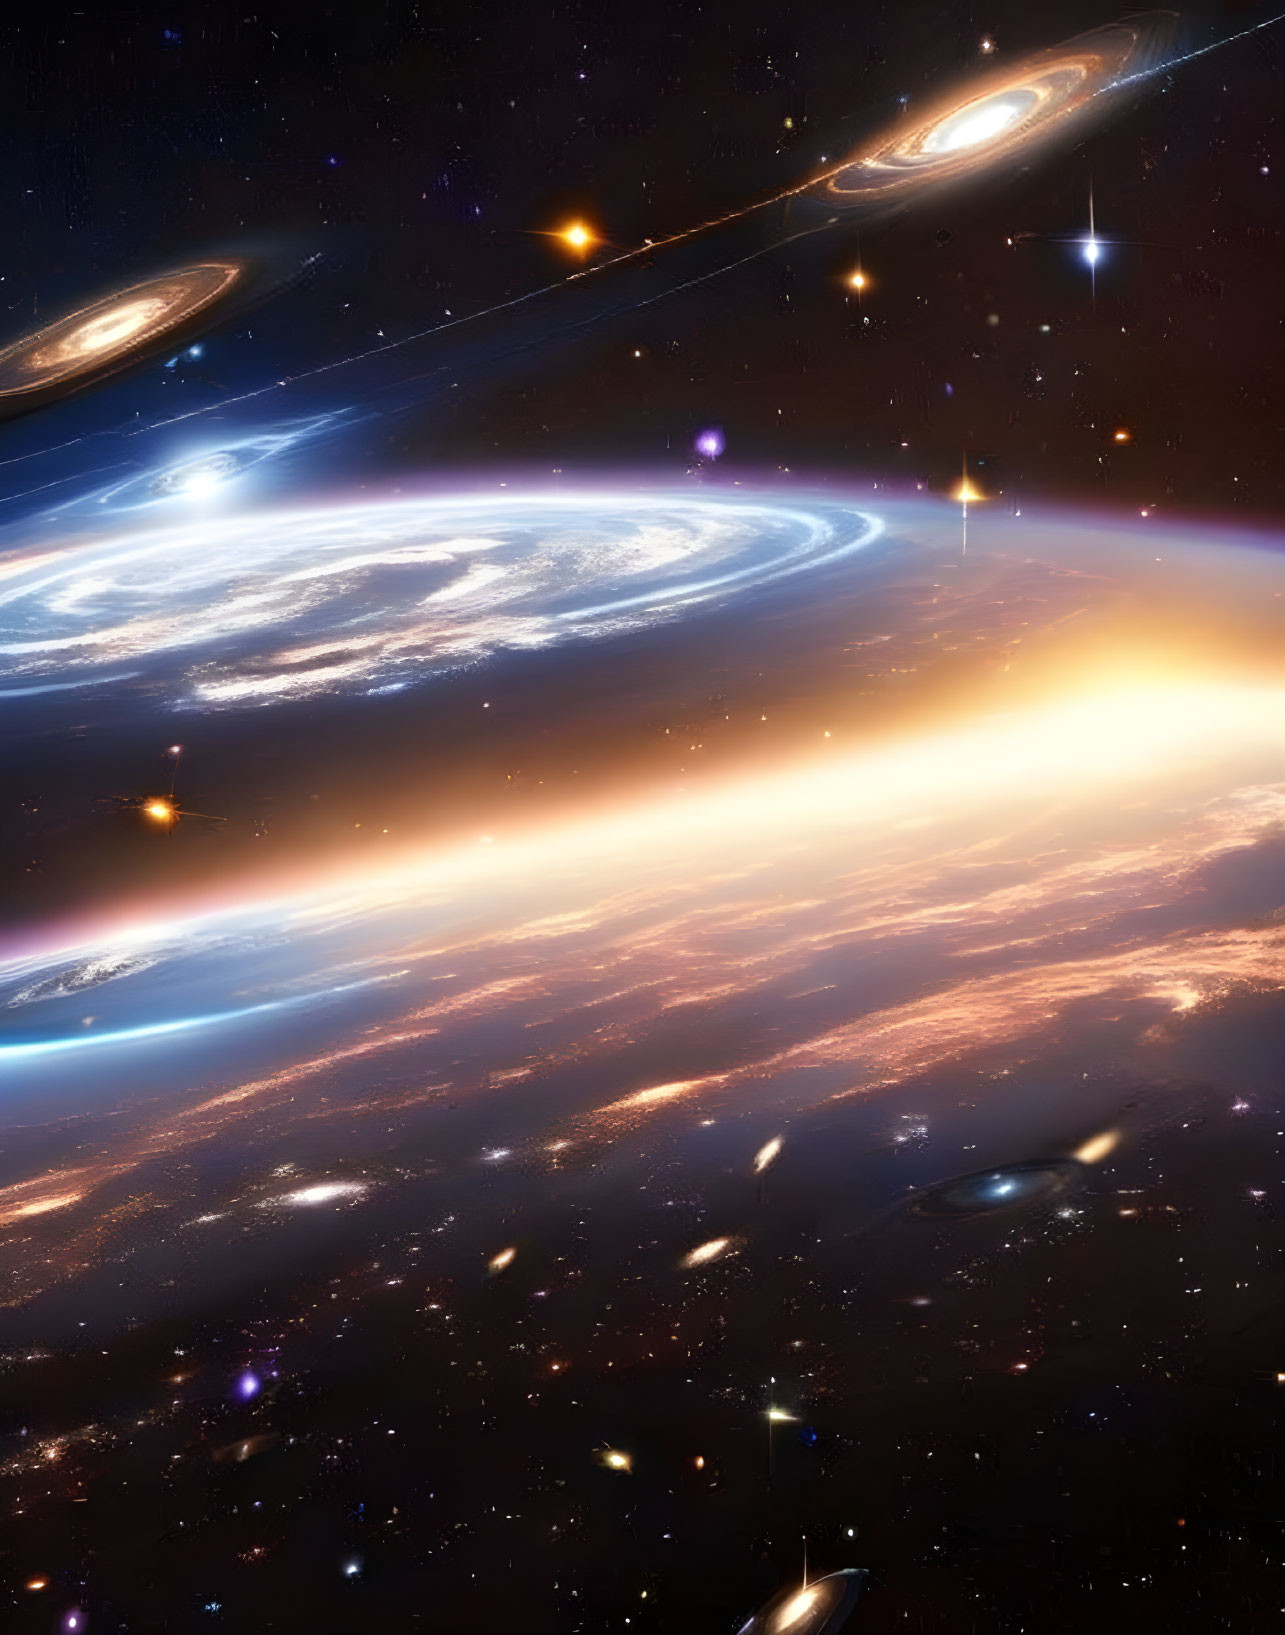 Inside a galaxiycluster